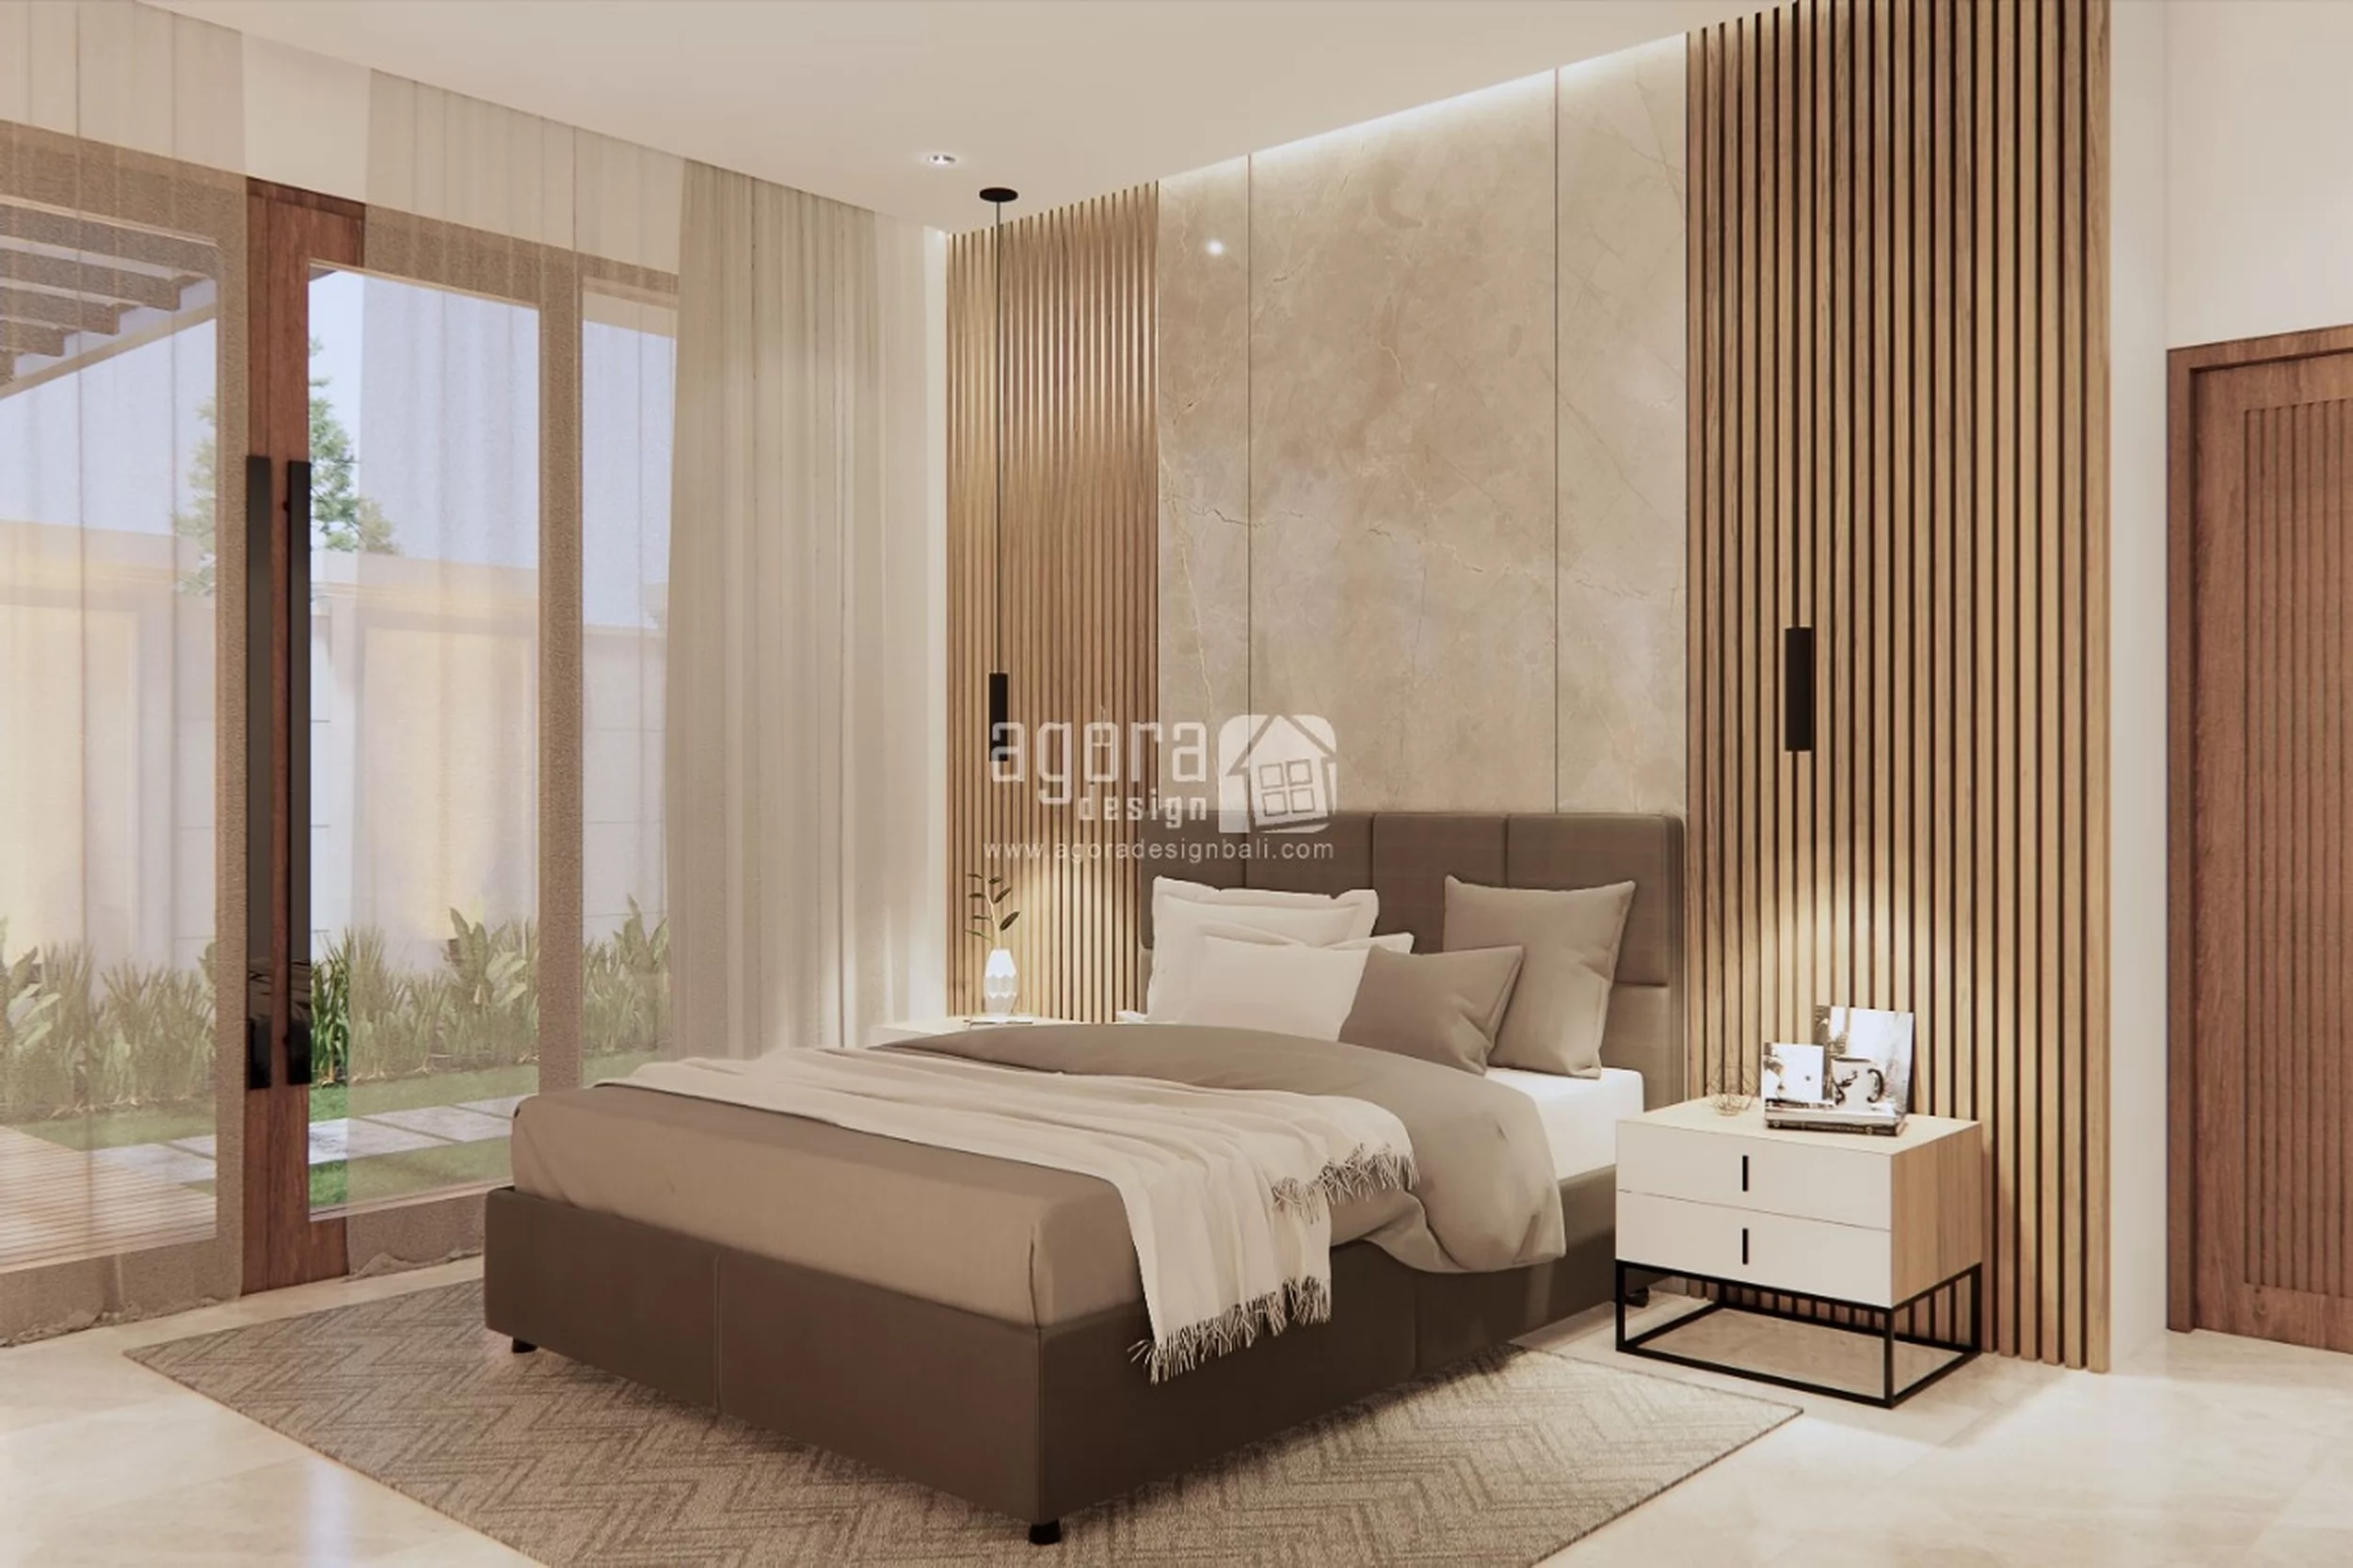 Desain Ruang Tidur 2 Rumah Bali Modern